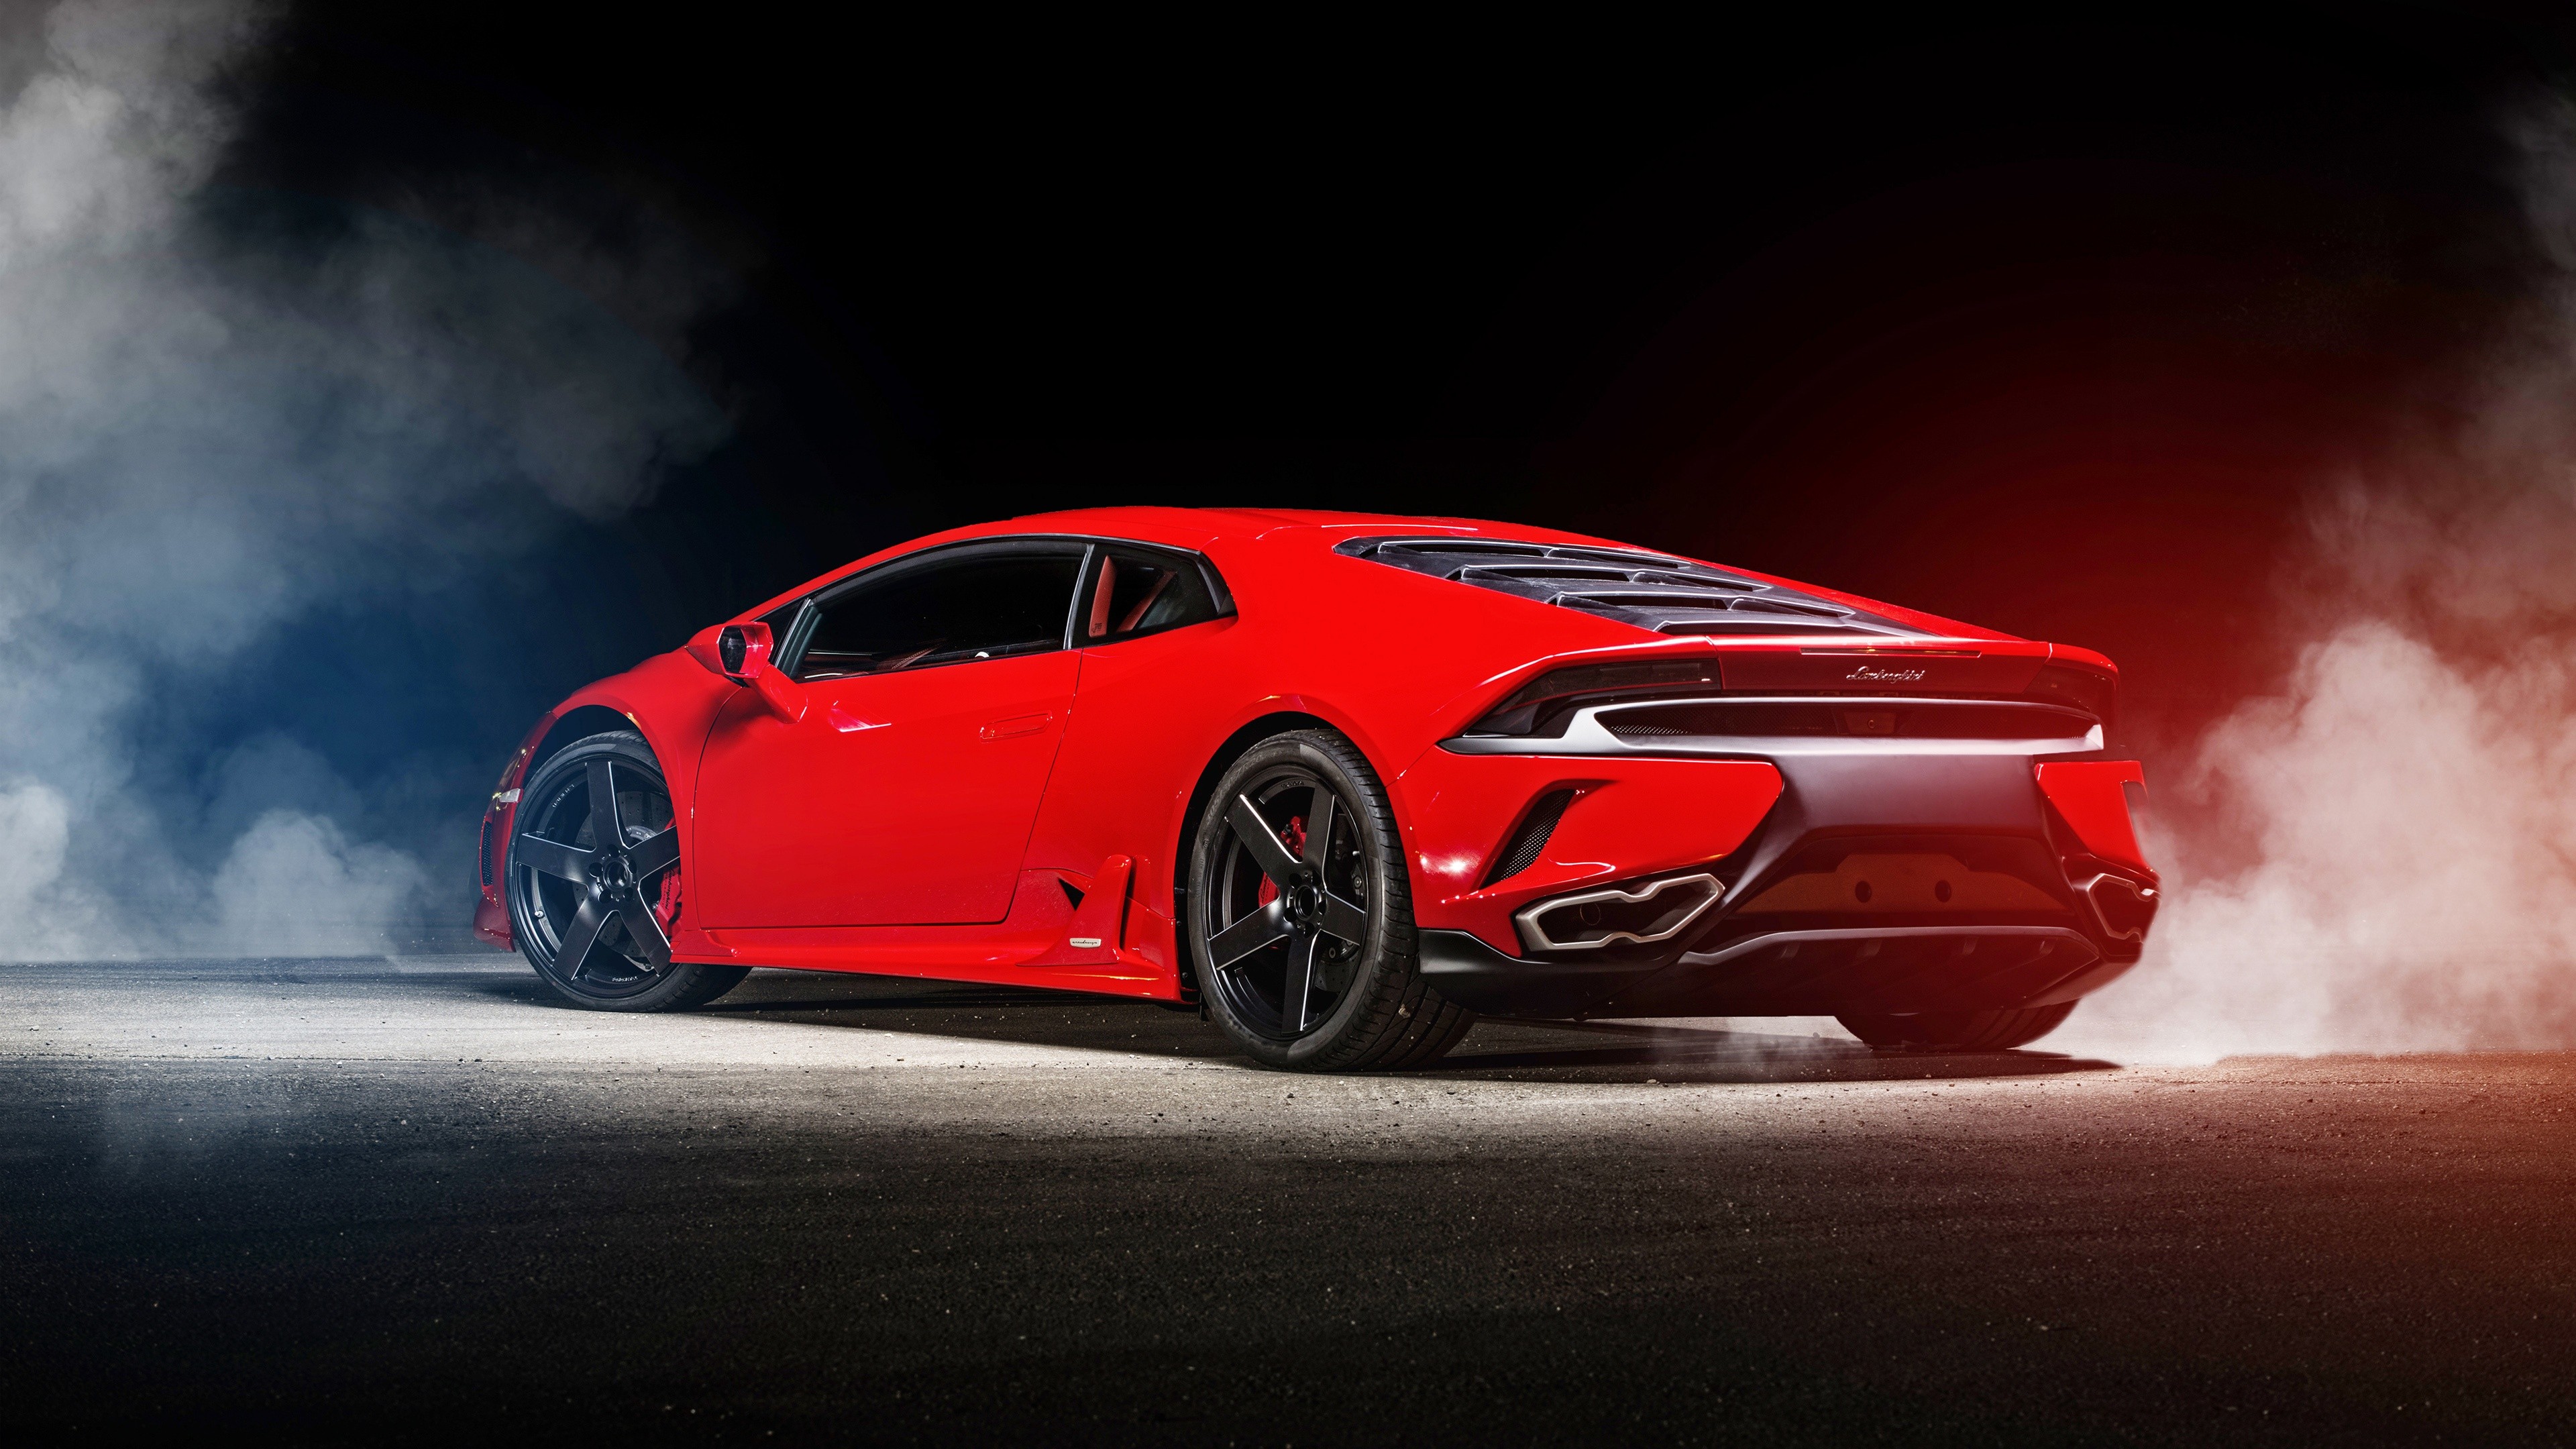 Lamborghini Huracan wallpaper ·① ① Download free cool full ...